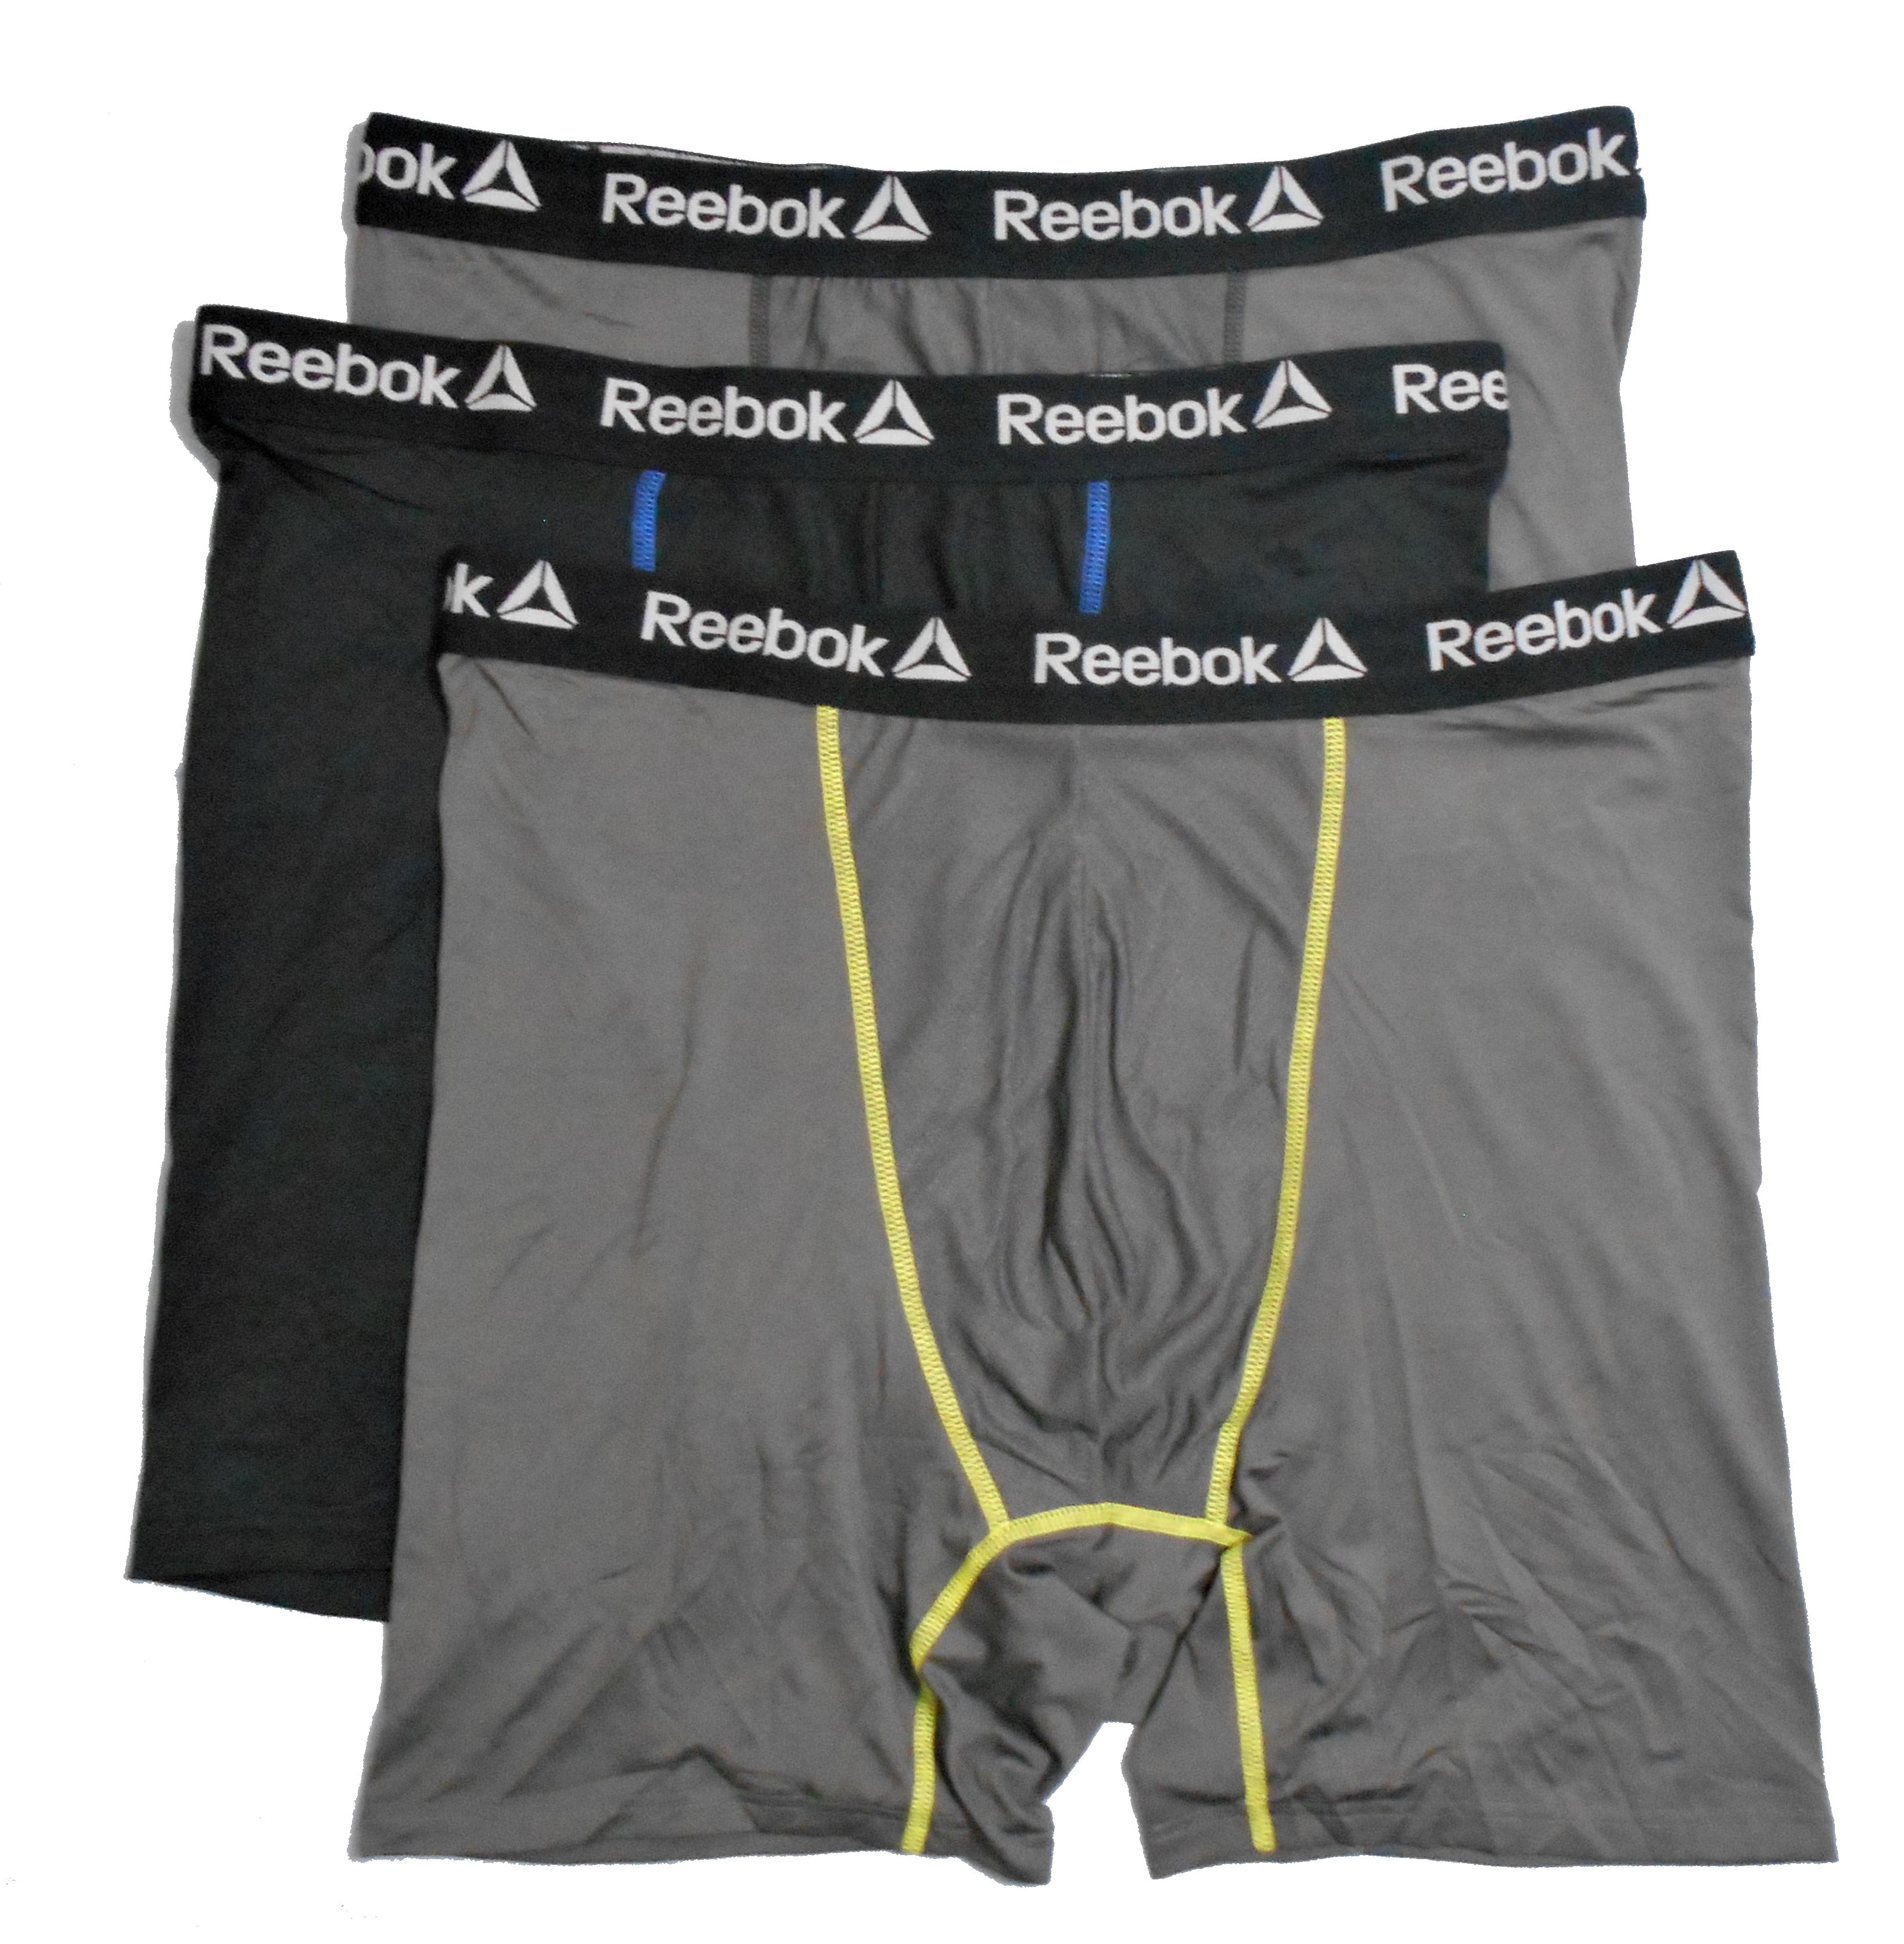 buy reebok underwear